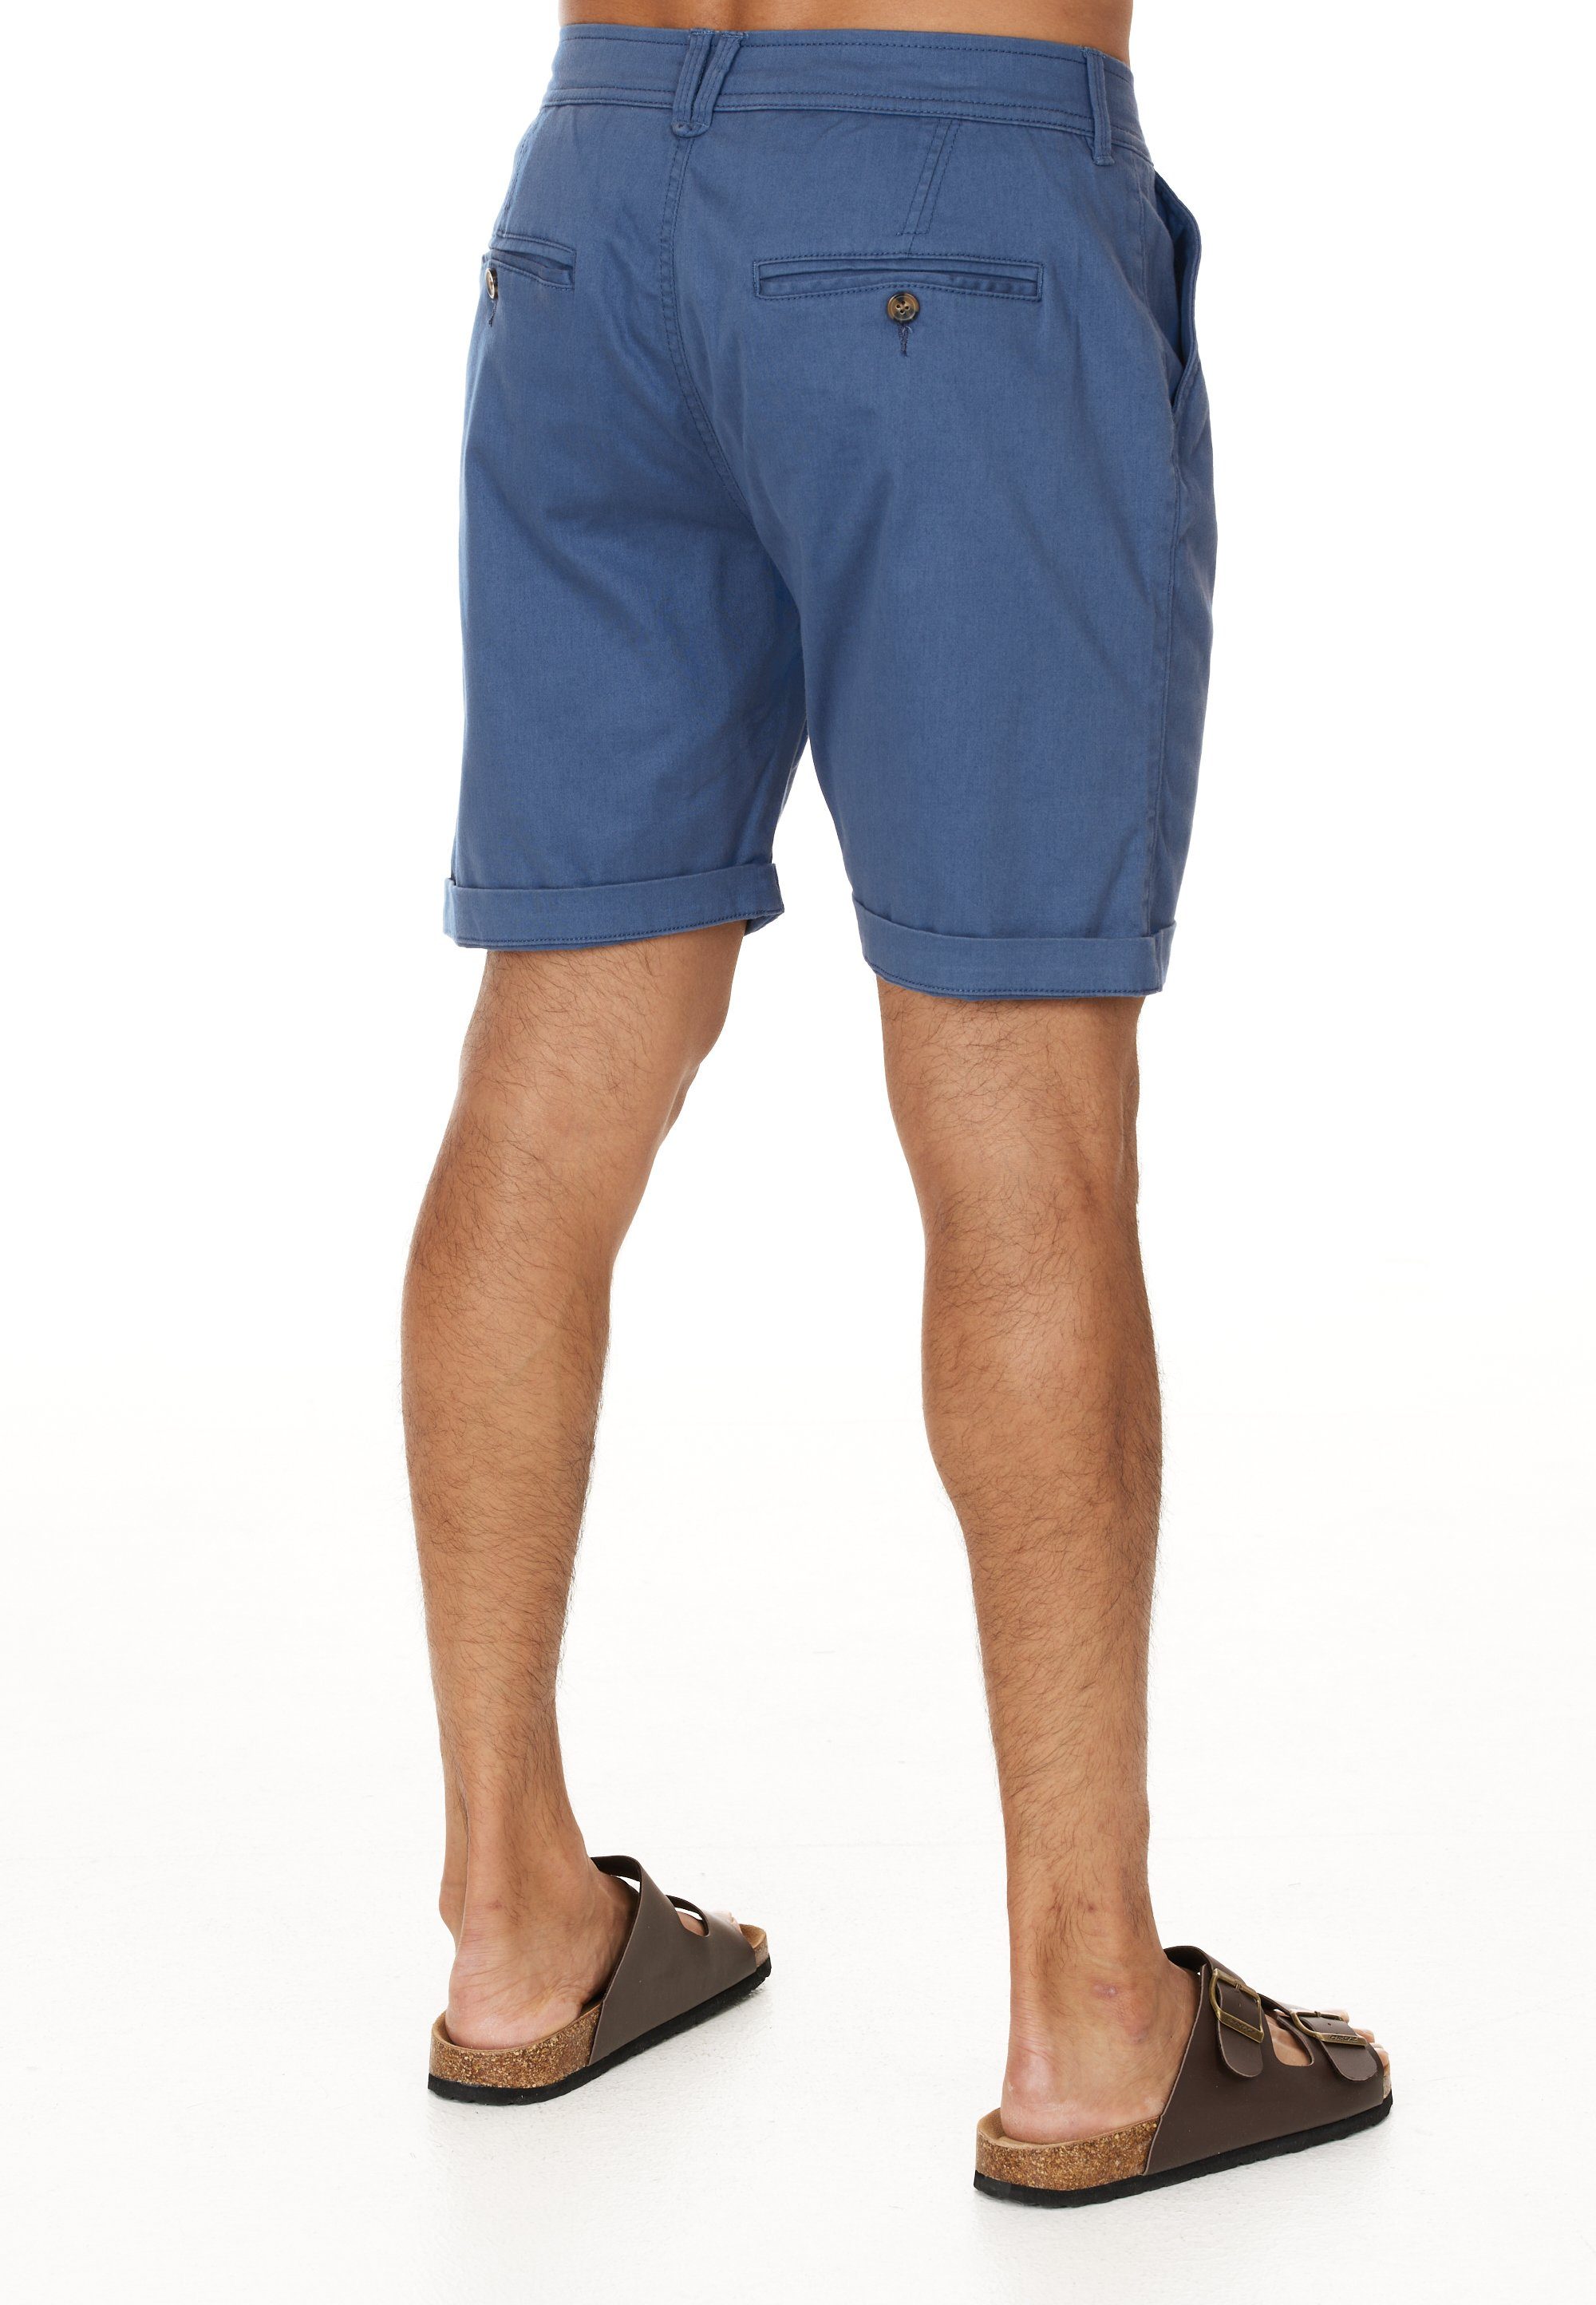 Shorts praktischen blau CRUZ mit Jerryne Seitentaschen